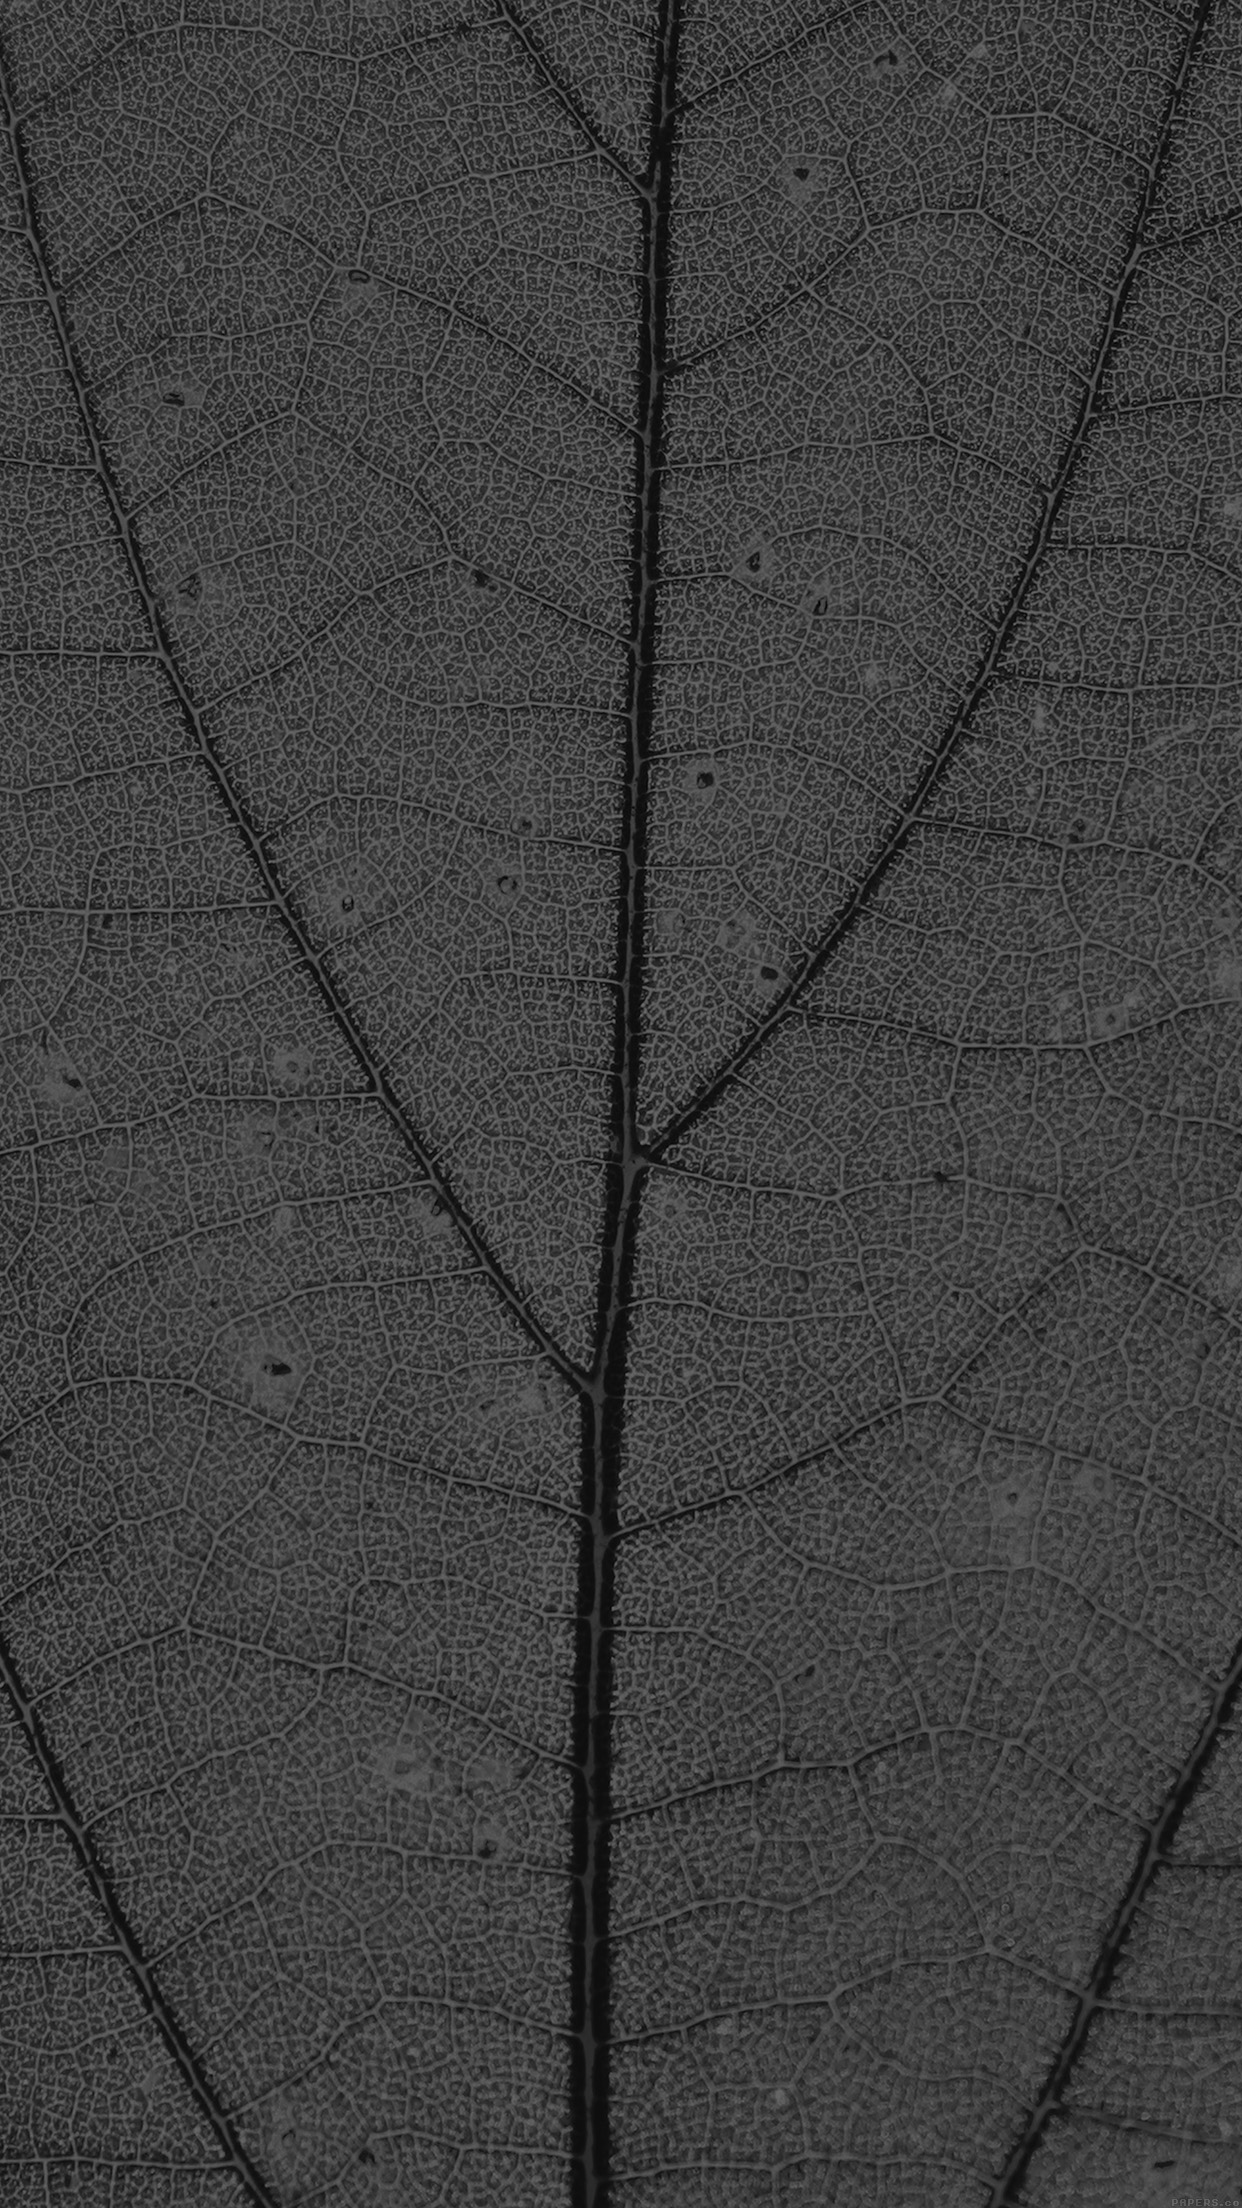 Dark Leaf Texture Nature Pattern